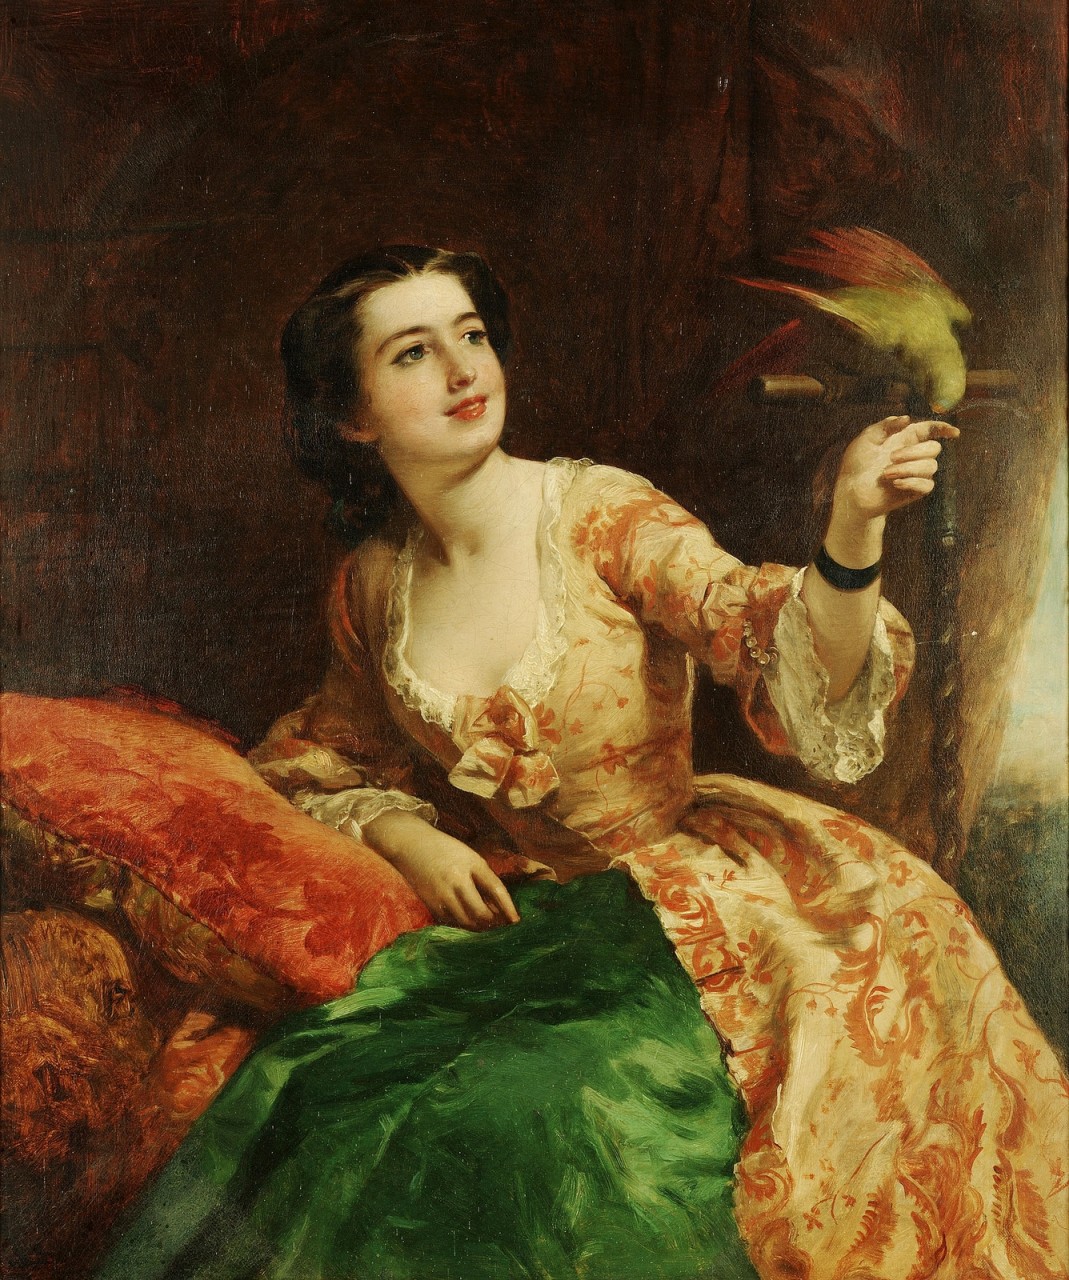 Уильям Пауэлл Фрайт (1819-1909)  и его картины